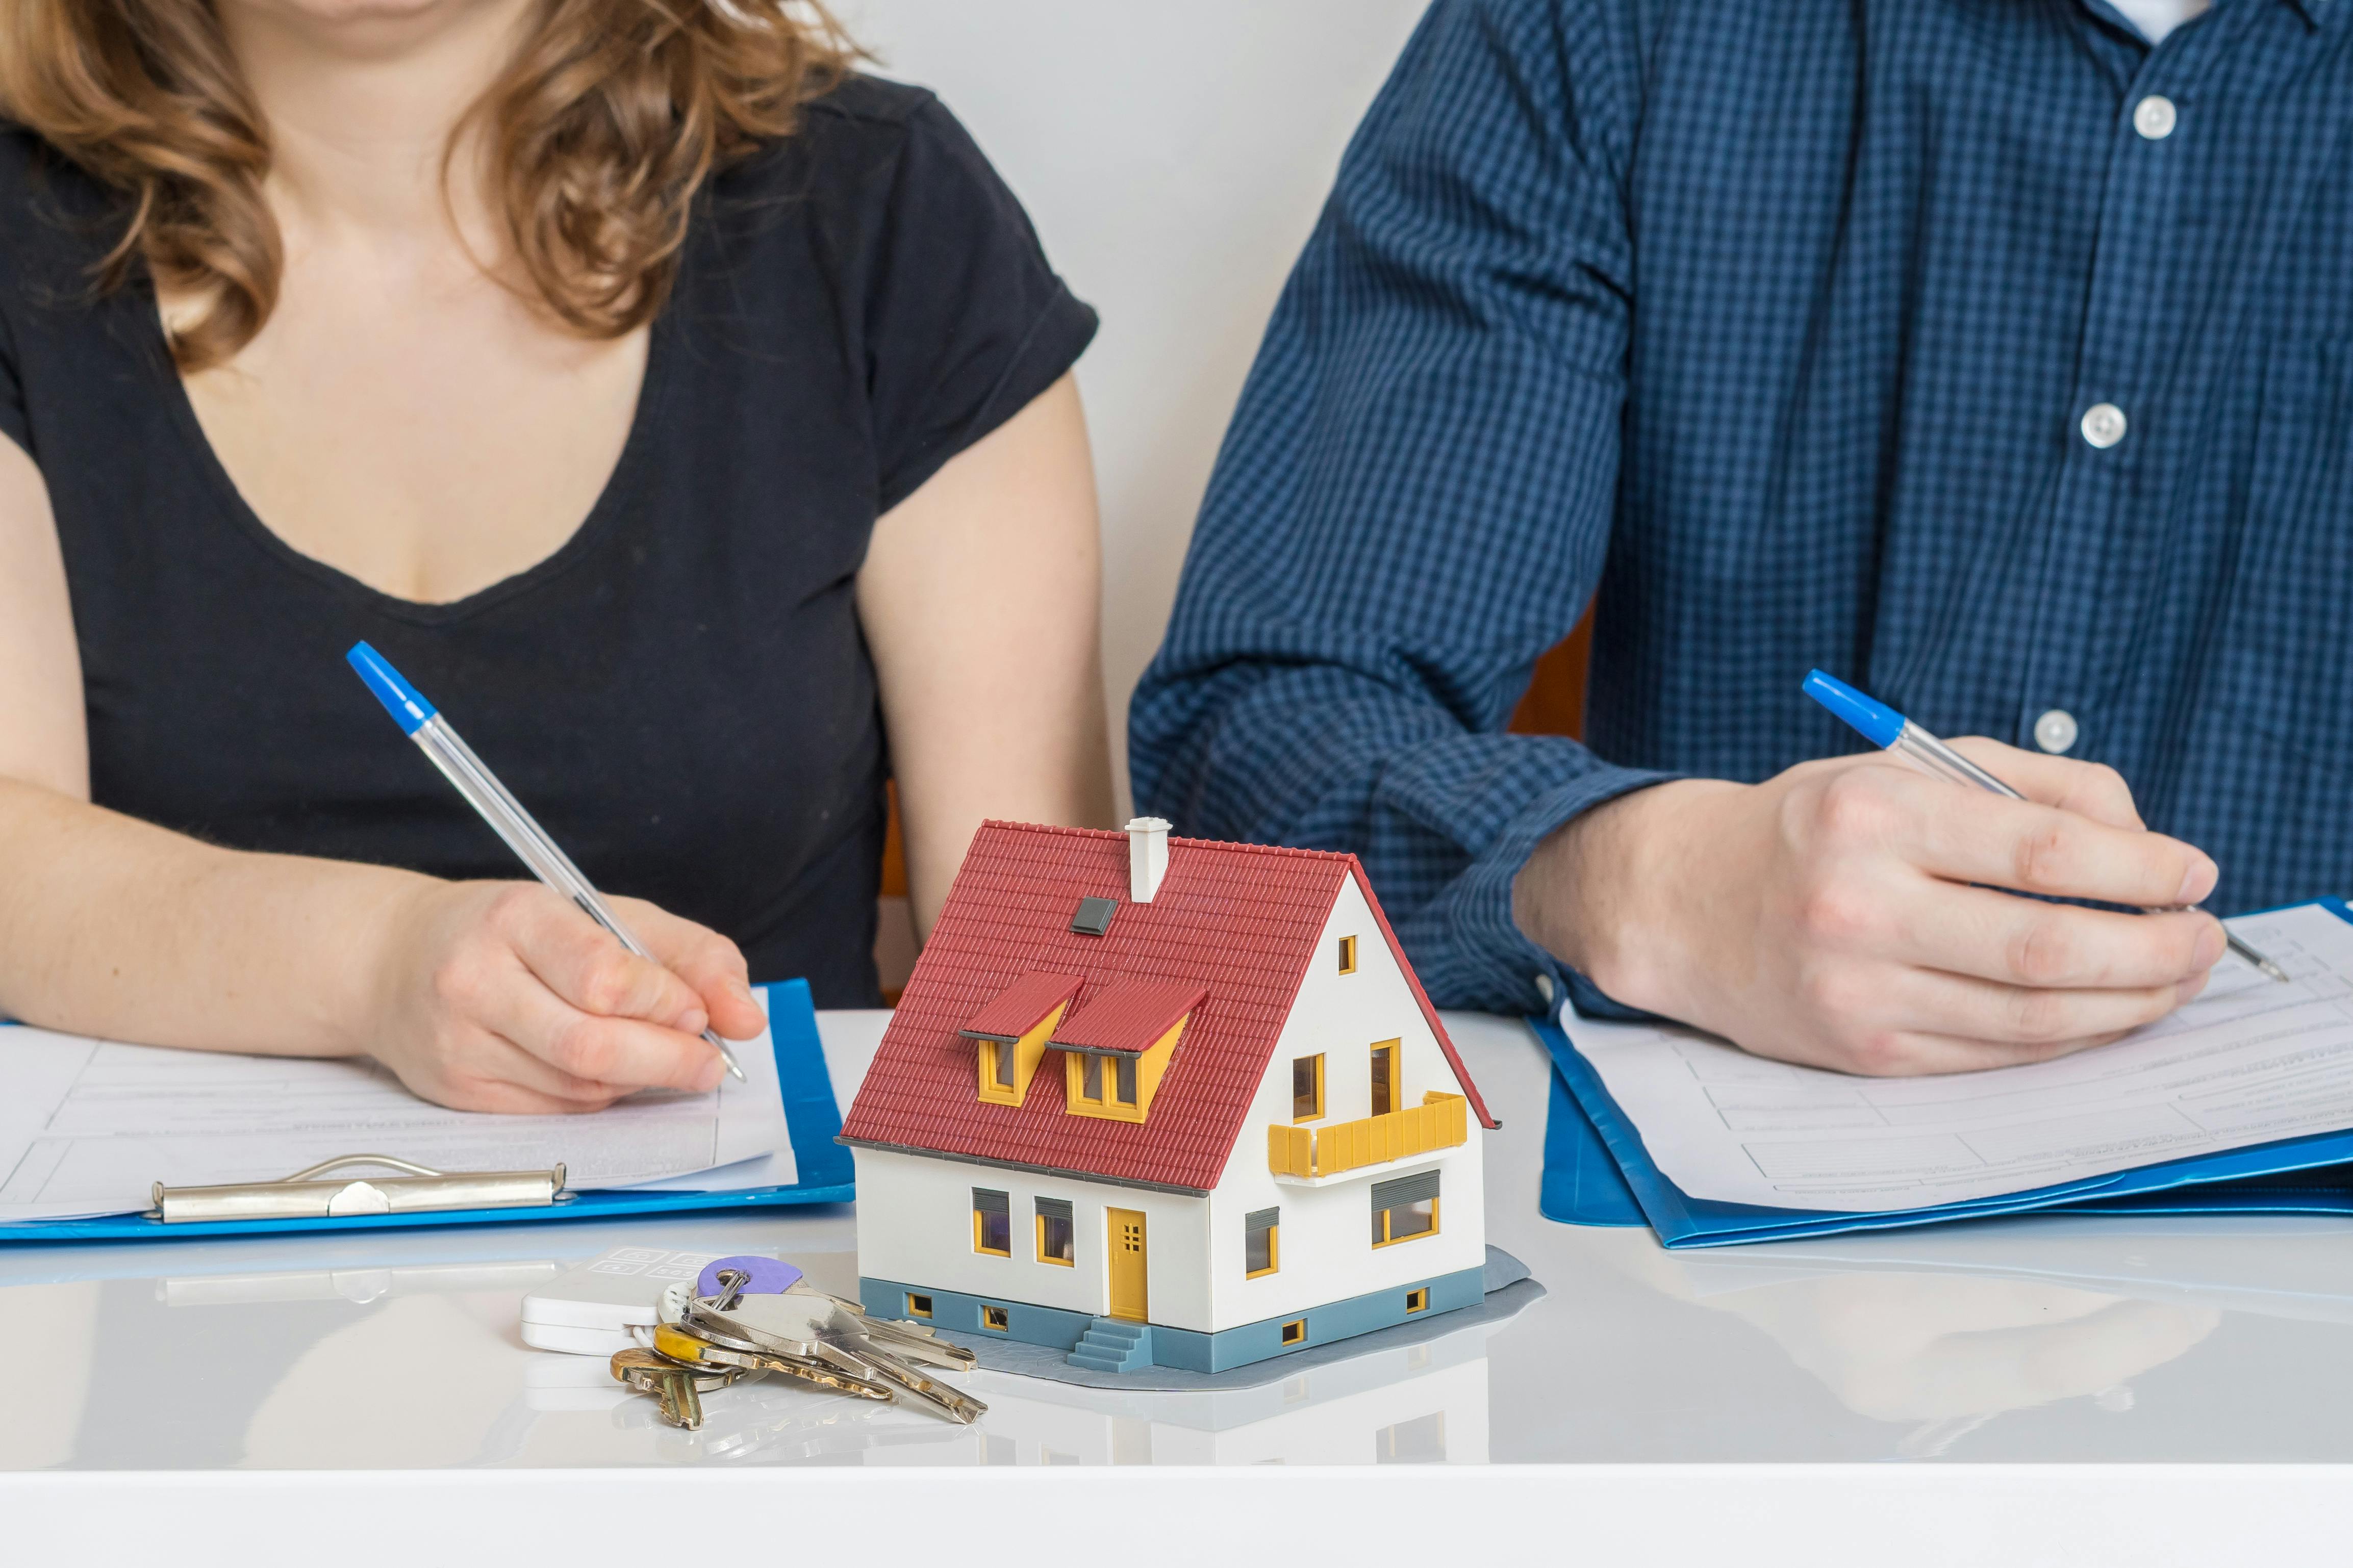 Par underskriver hver sine papirer med nøgler og en model af et hus stående foran sig på bordet.